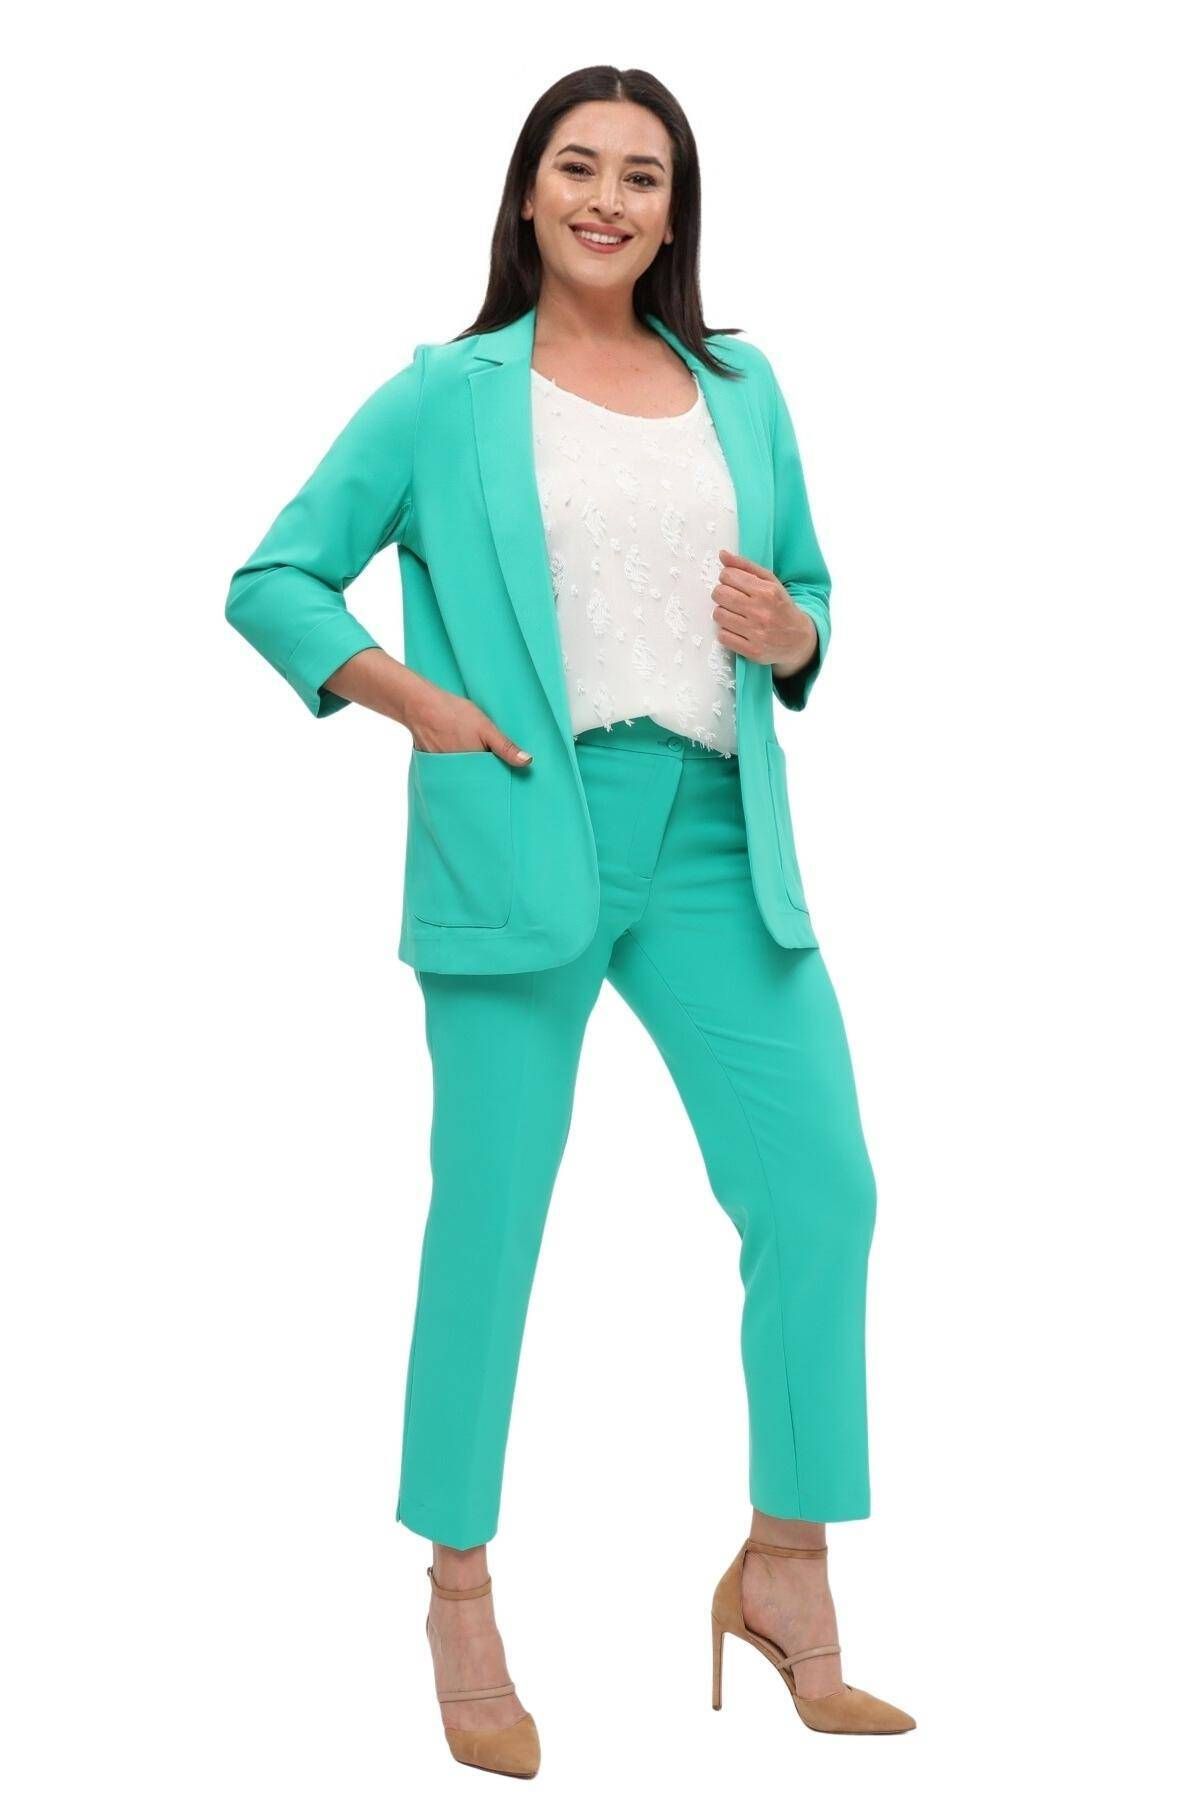 Hanezza Kadın Blazer Ceket | Benetton | Büyük Beden | 7 Renk | Takım Elbise Uyumlu